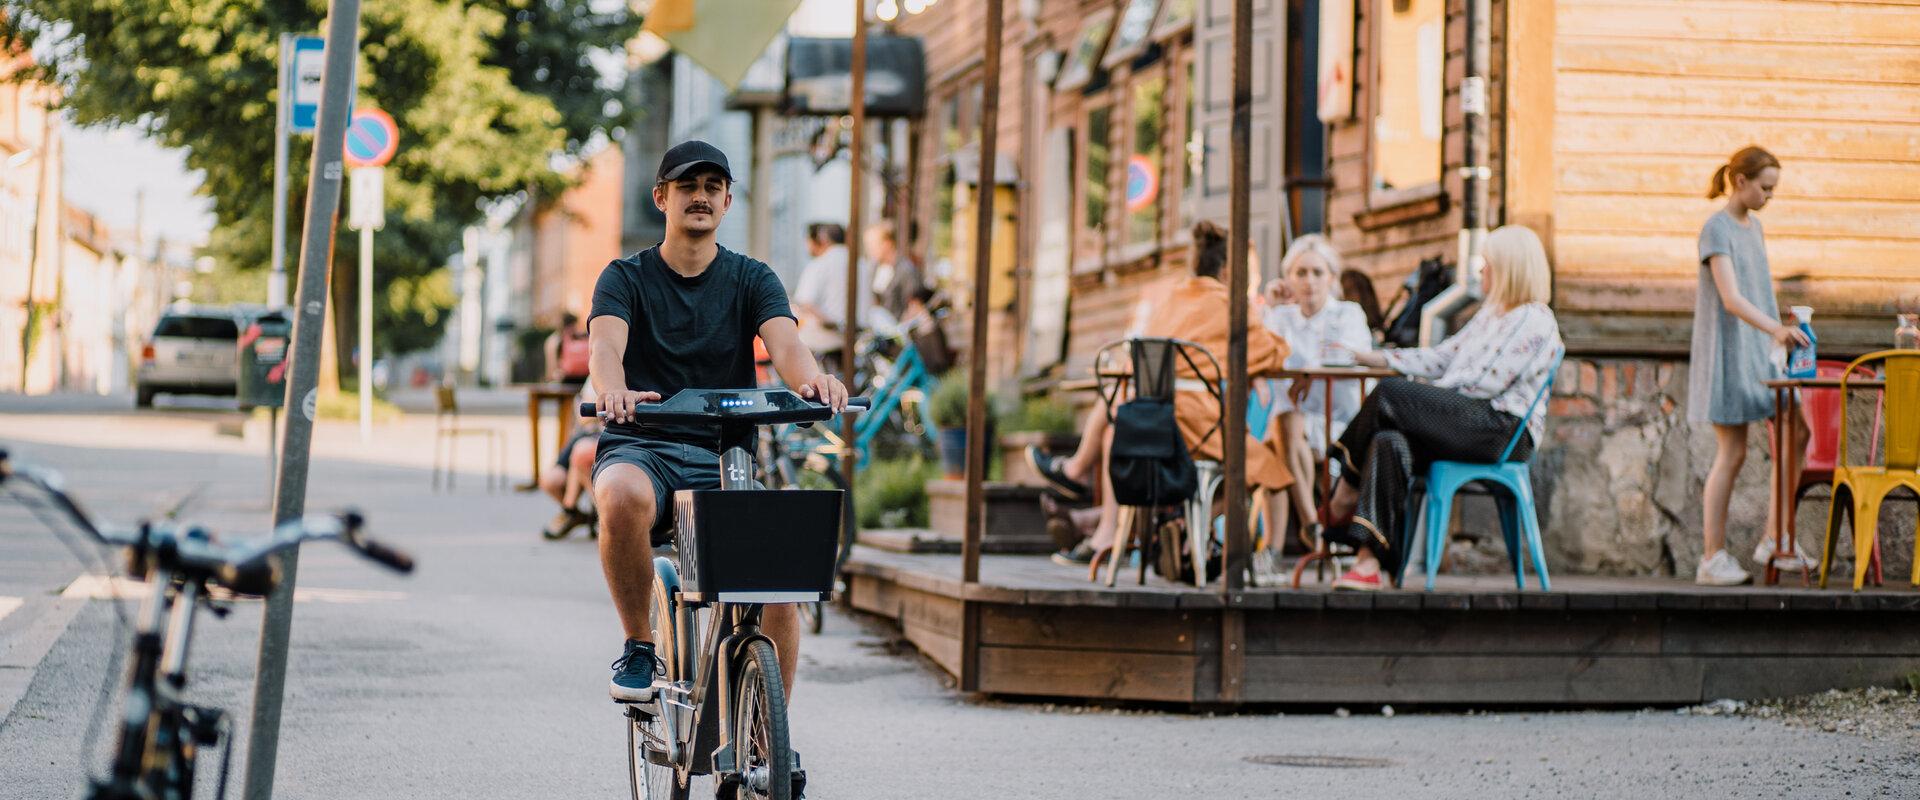 Tartu linna virtuaaltuur: Karlova linnaosa puitarhitektuur, jalgrattaringlus ja suvi